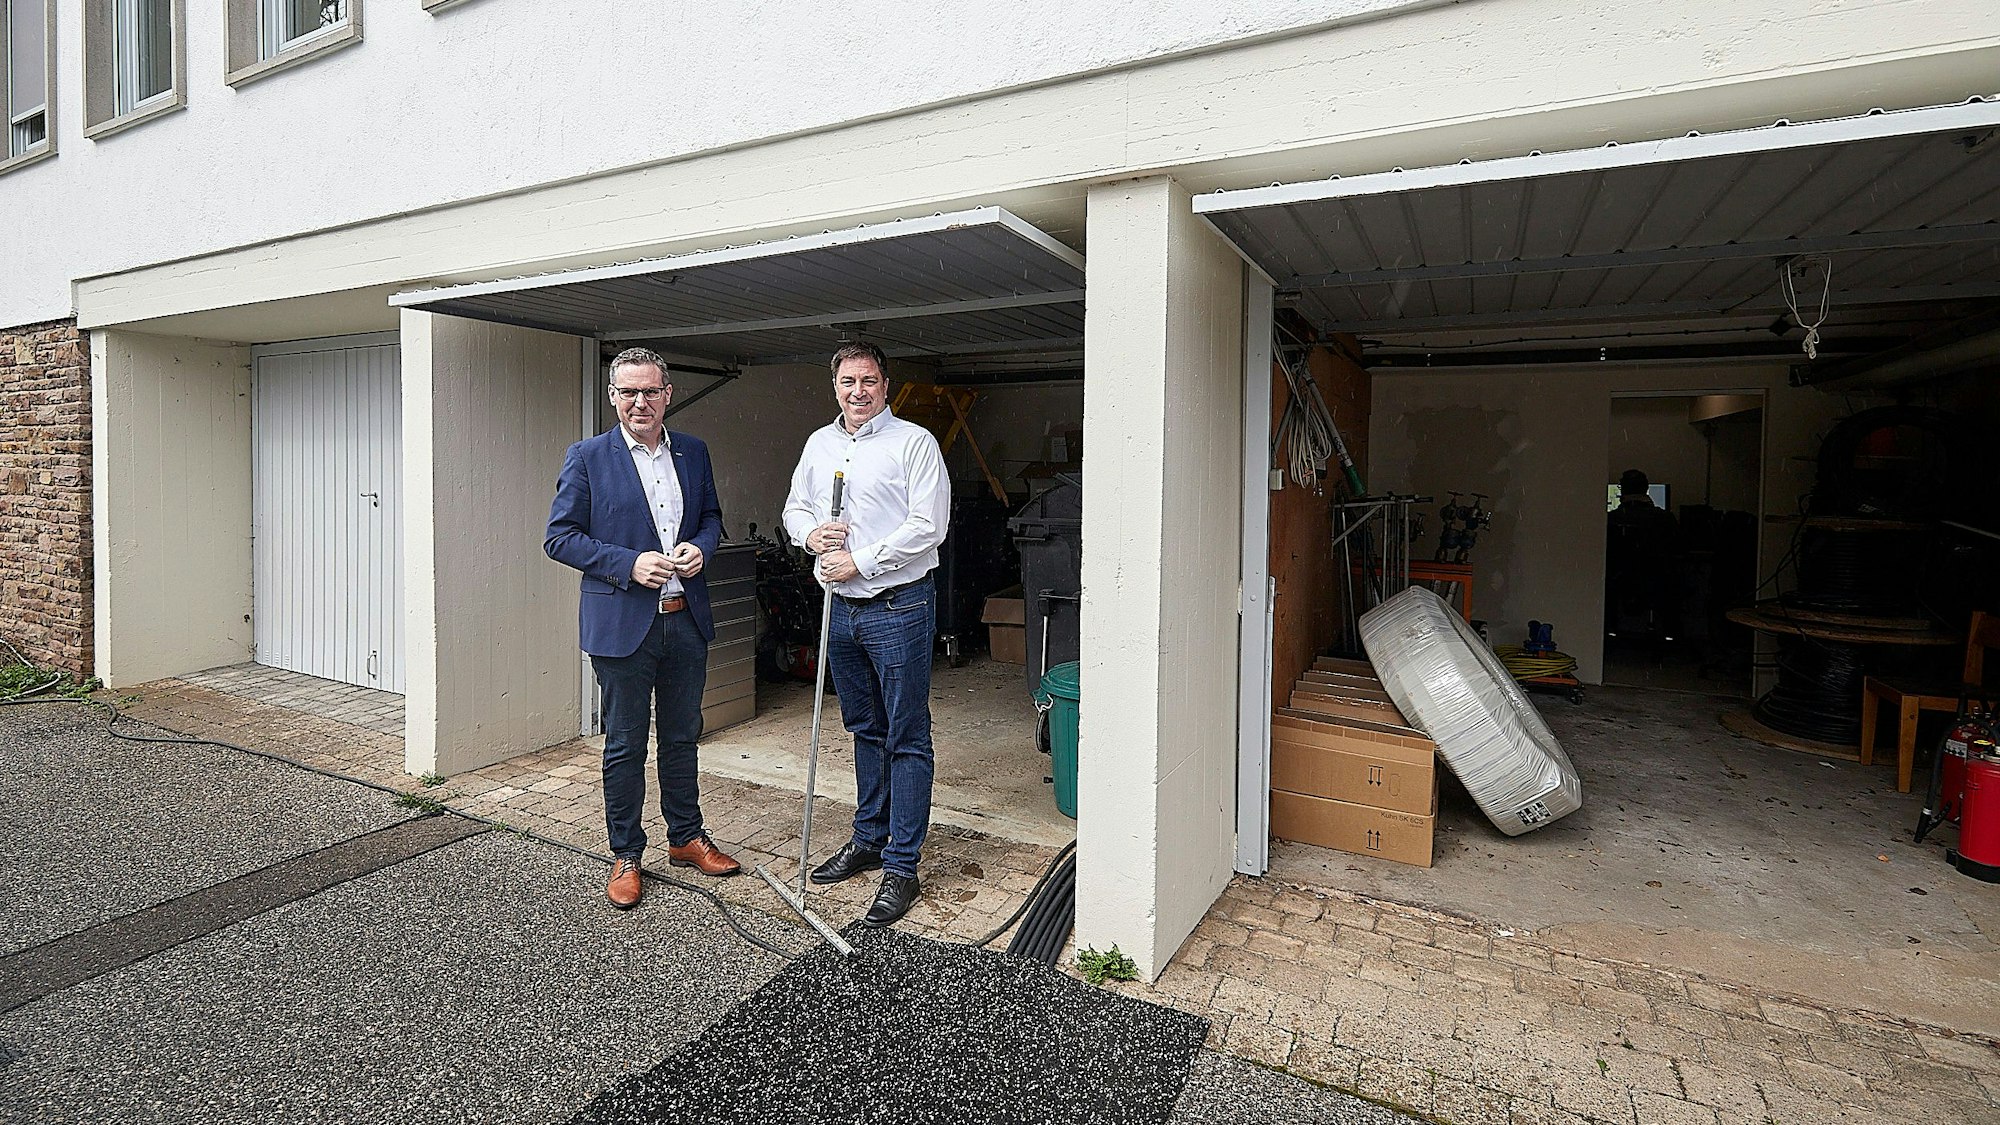 Bürgermeister Norbert Crump (l.) und Stefan Grieshaber stehen vor drei Garagen am Rathaus der Gemeinde Nettersheim in Zingsheim.